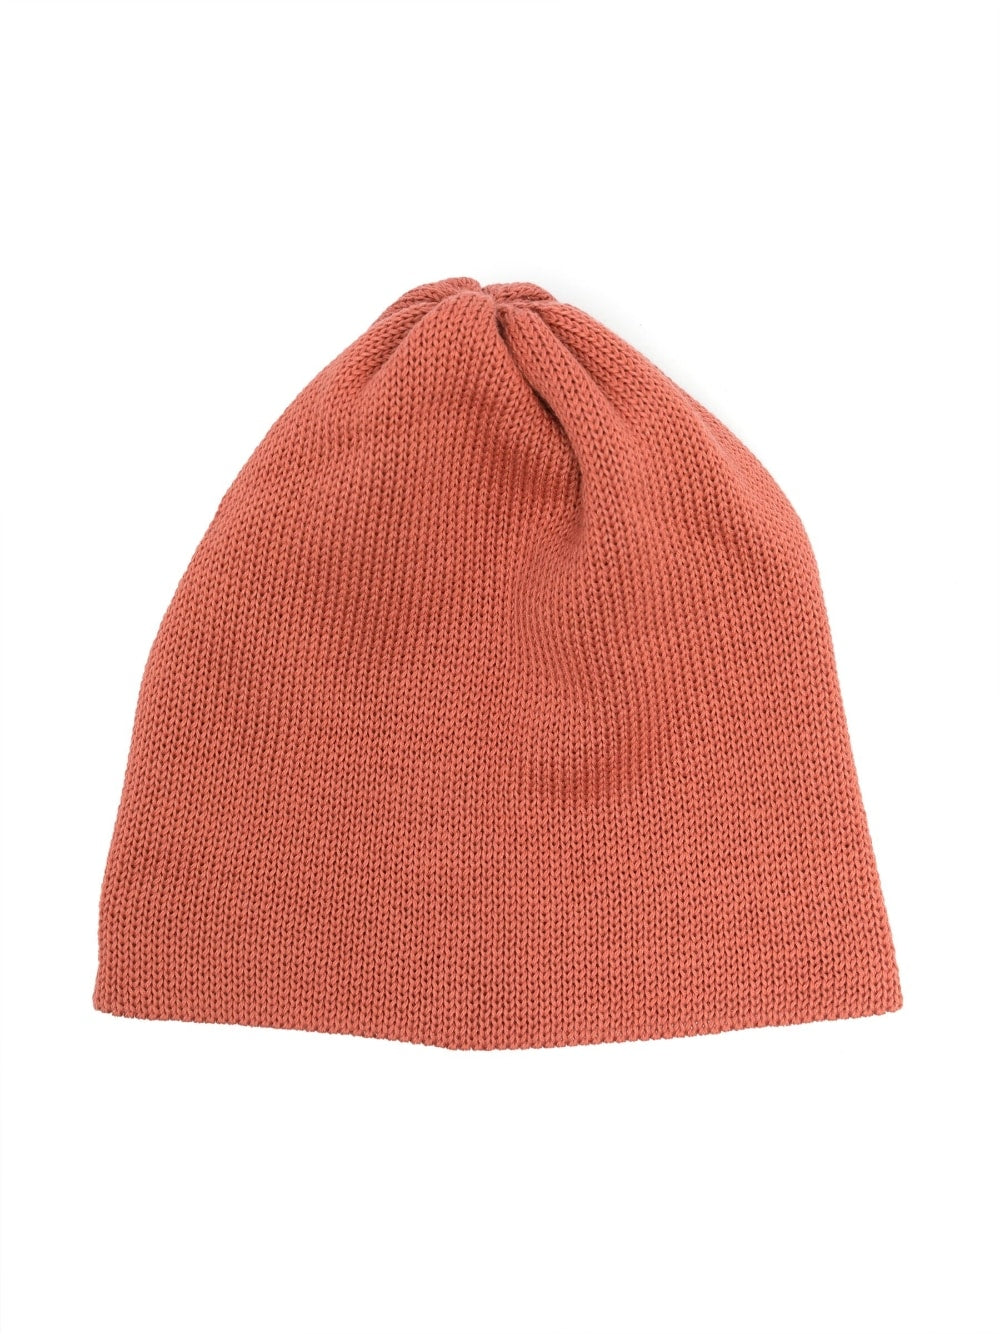 Fine knit cotton hat